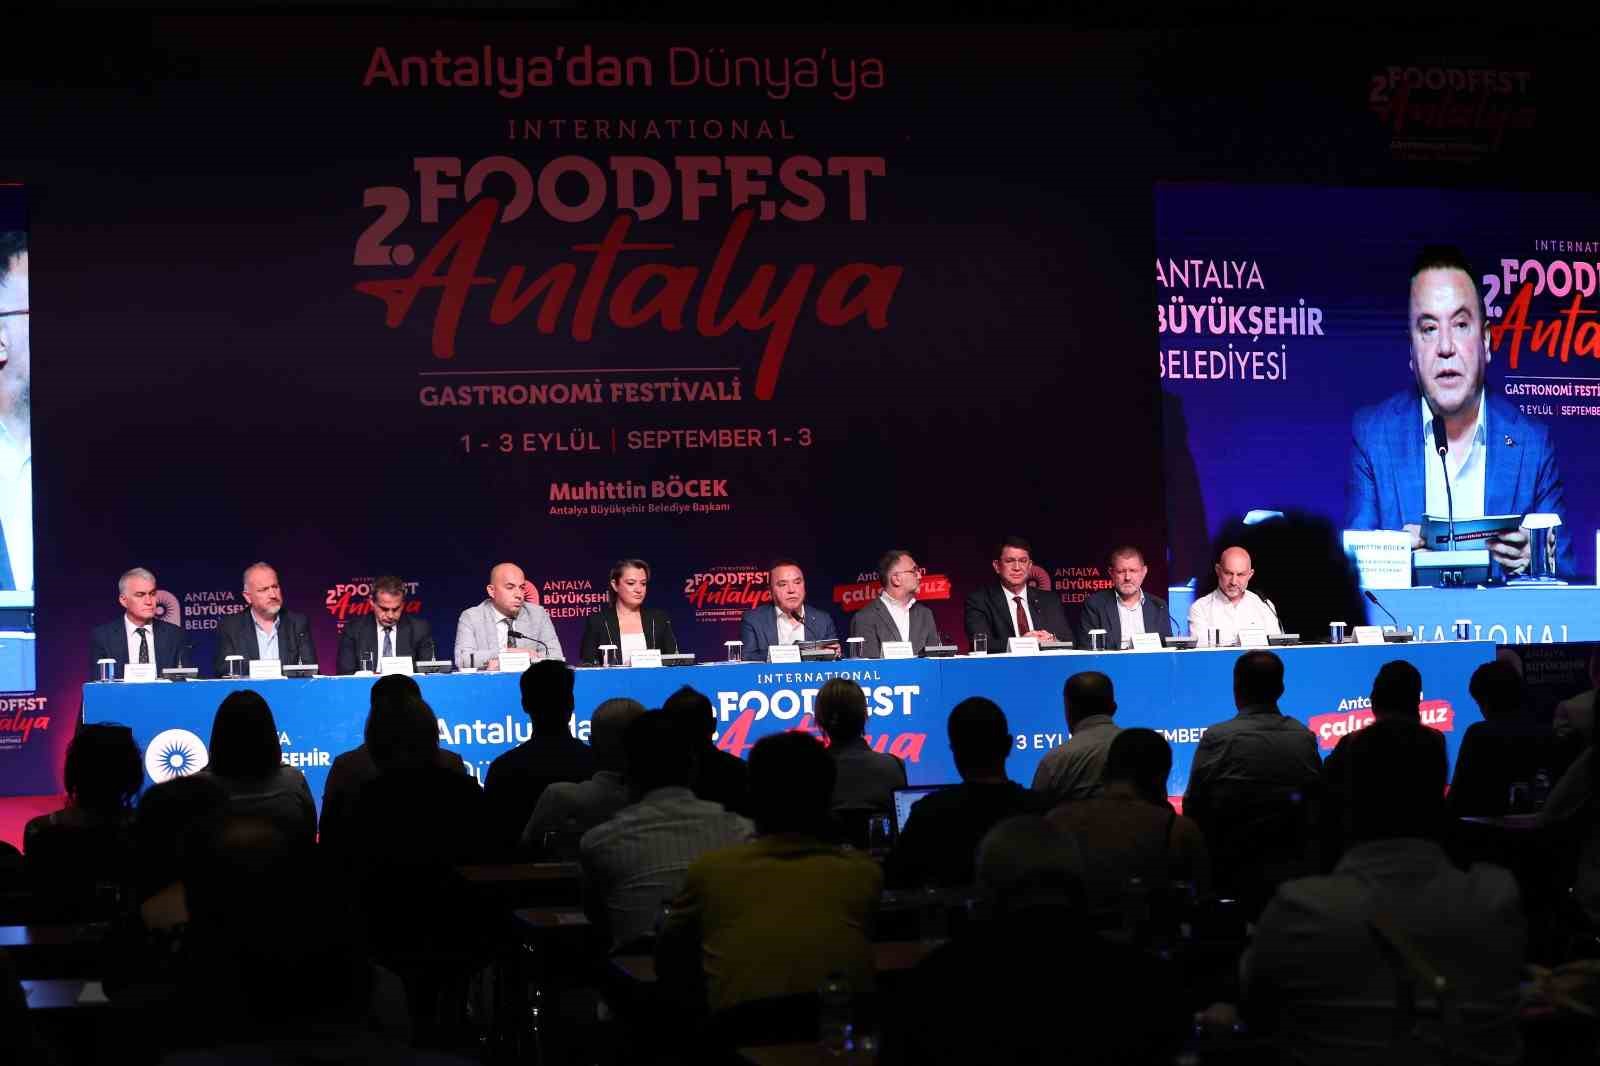 Antalya’dan dünyaya açılan 2. Foodfest Antalya Gastronomi Festivali başlıyor